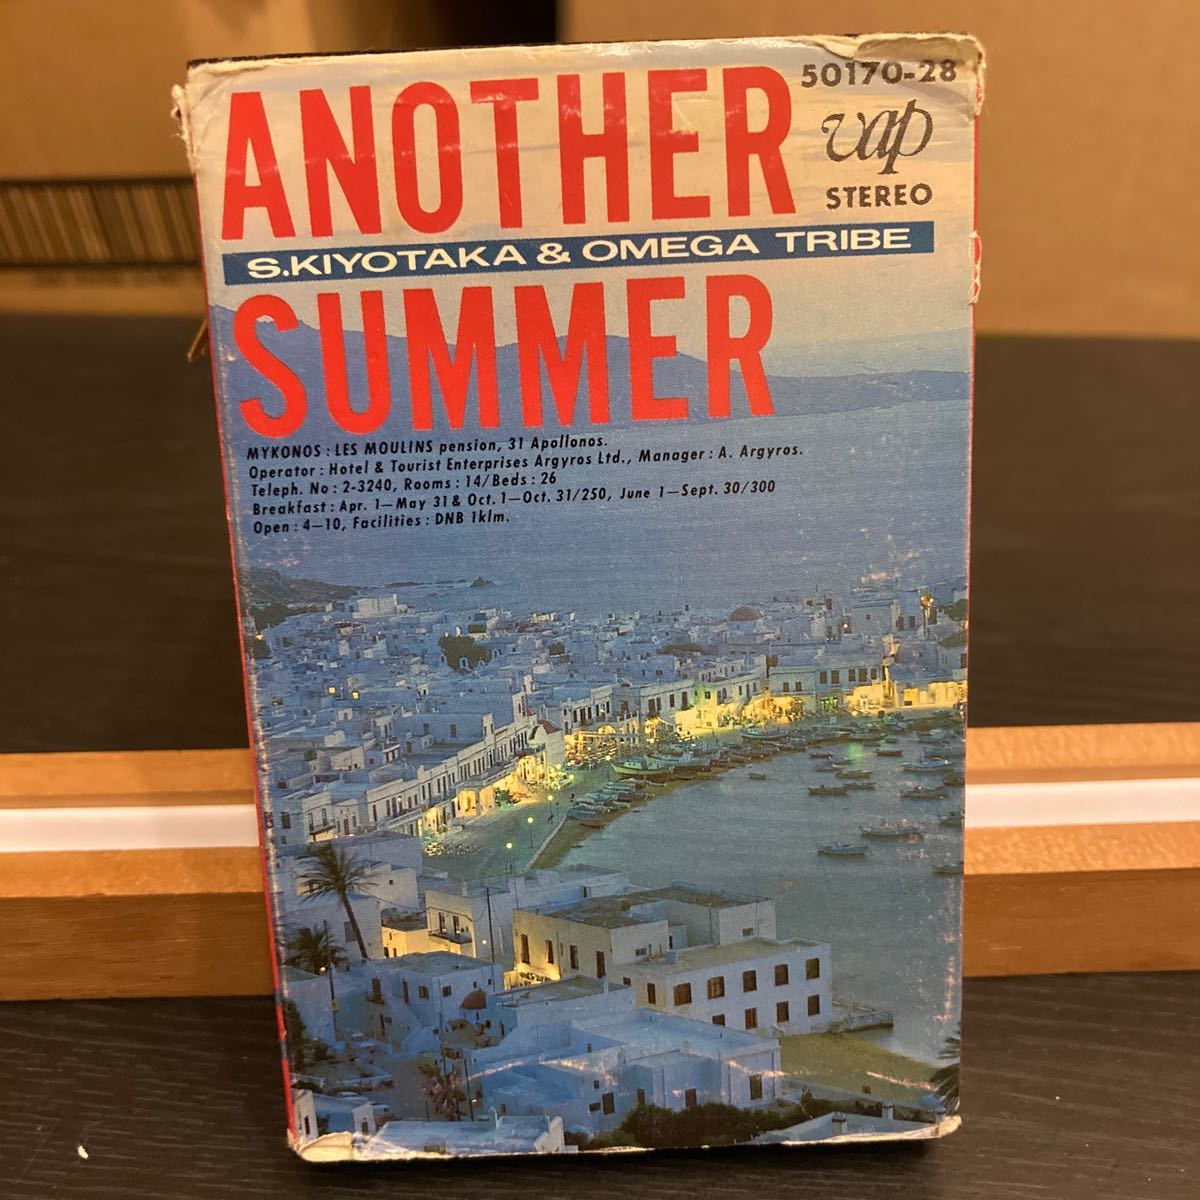 S. Kiyotaka & Omega Tribe 【Another Summer】カセットテープ cassette tape Vap 50170-28 1985 杉山 清貴 オメガトライブ_画像1